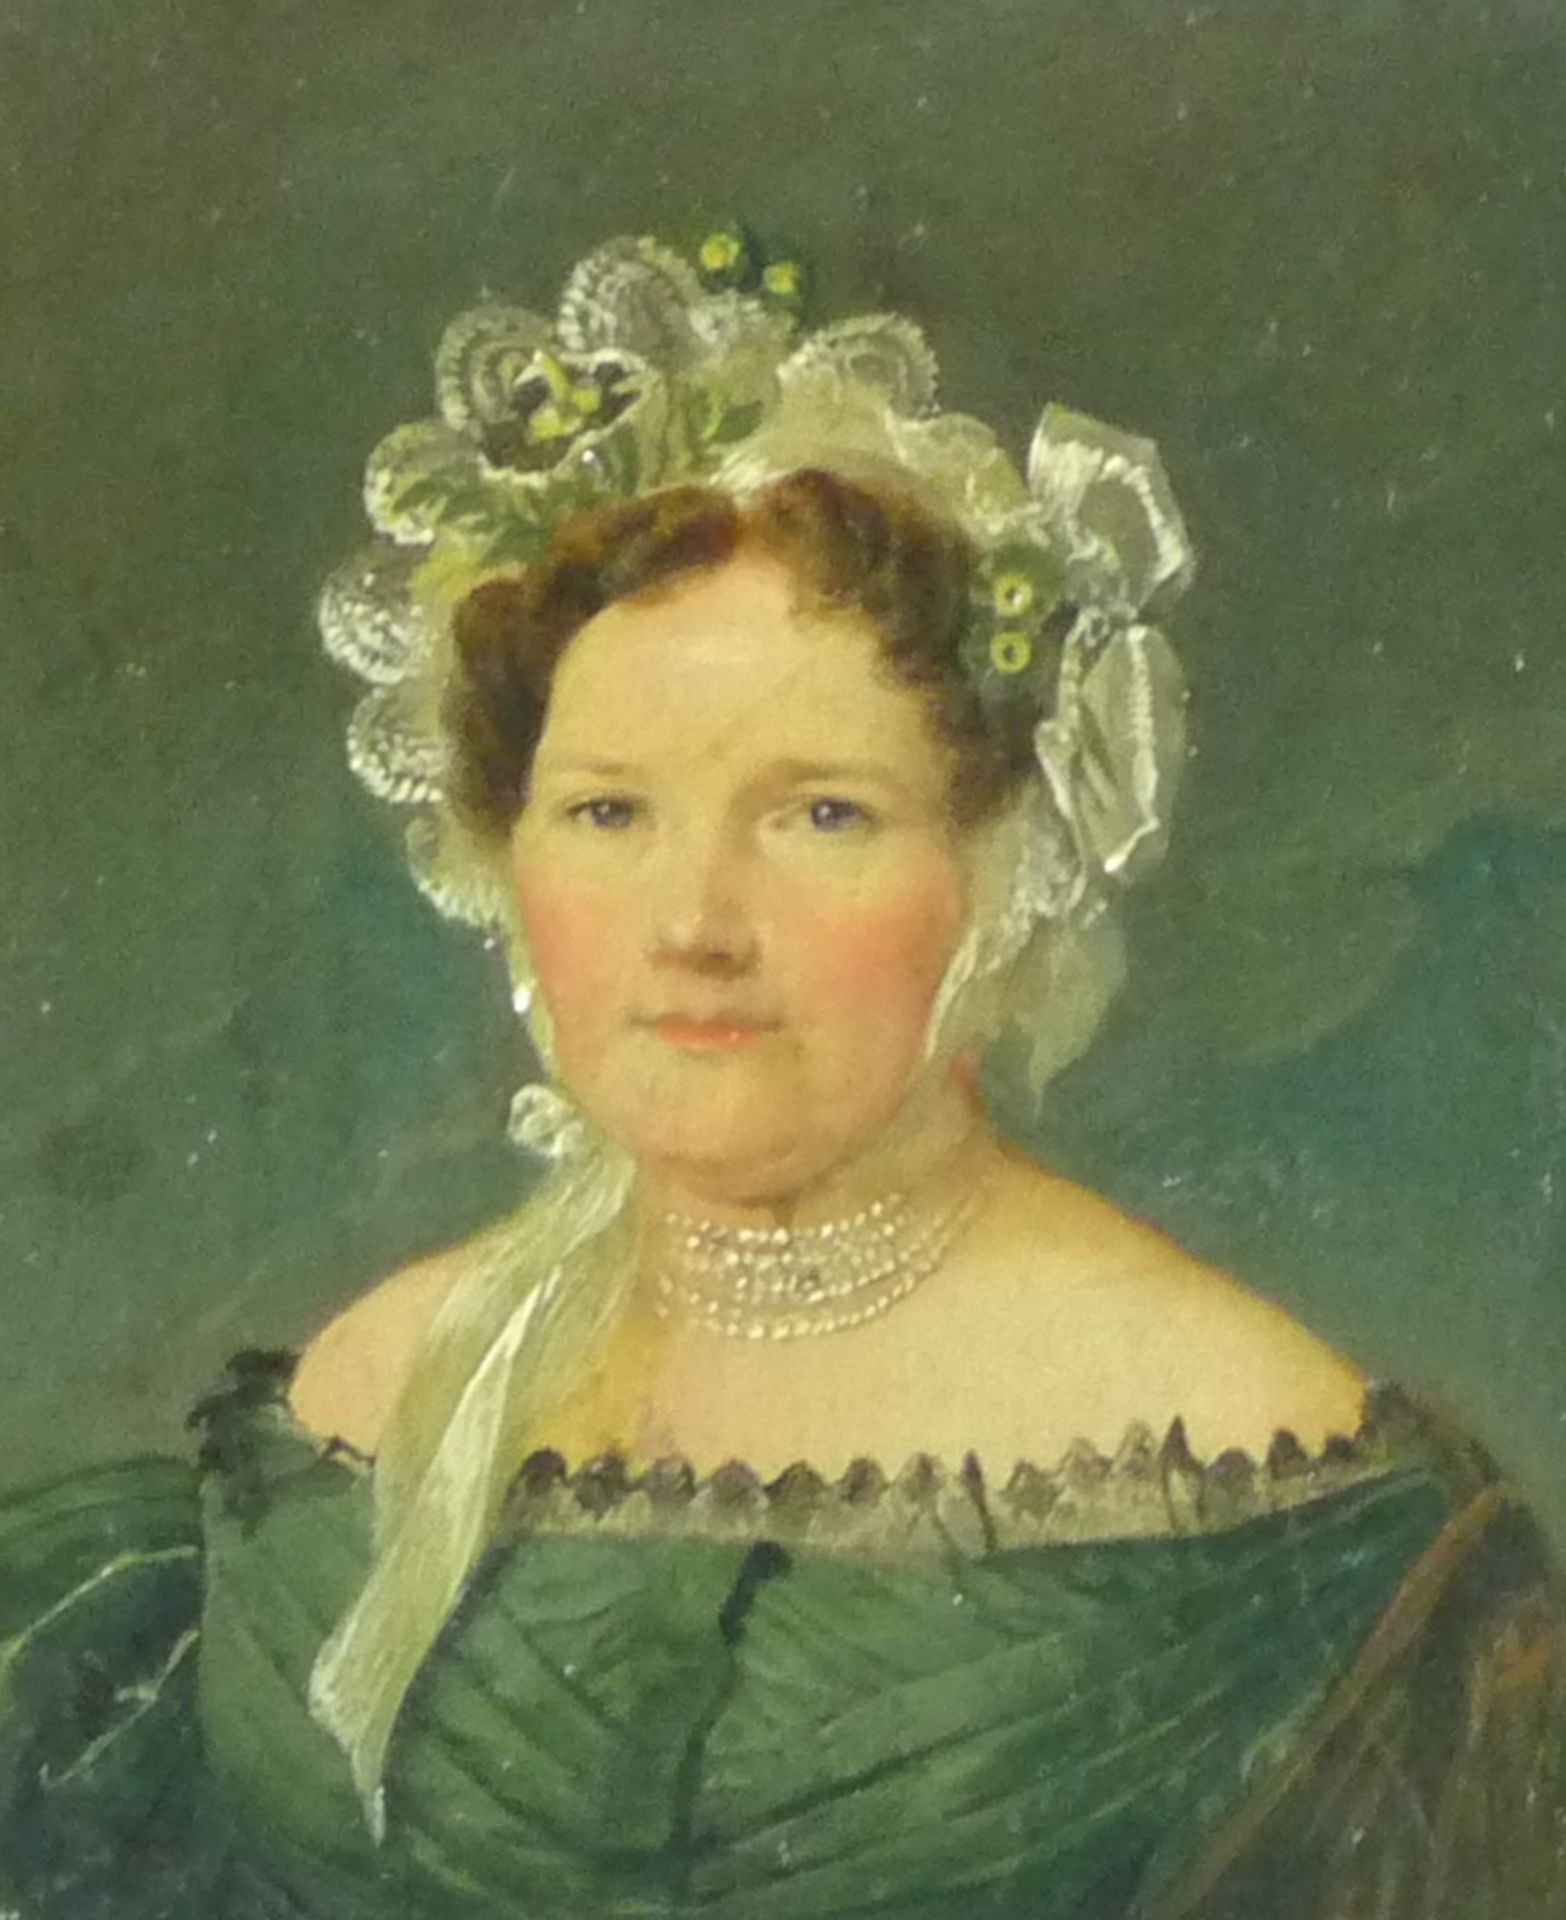 Paar kleine BiedermeierportraitsÖsterreich, um 1830/40Schulterstücke einer Dame mit Spitzenhaube und - Bild 3 aus 4